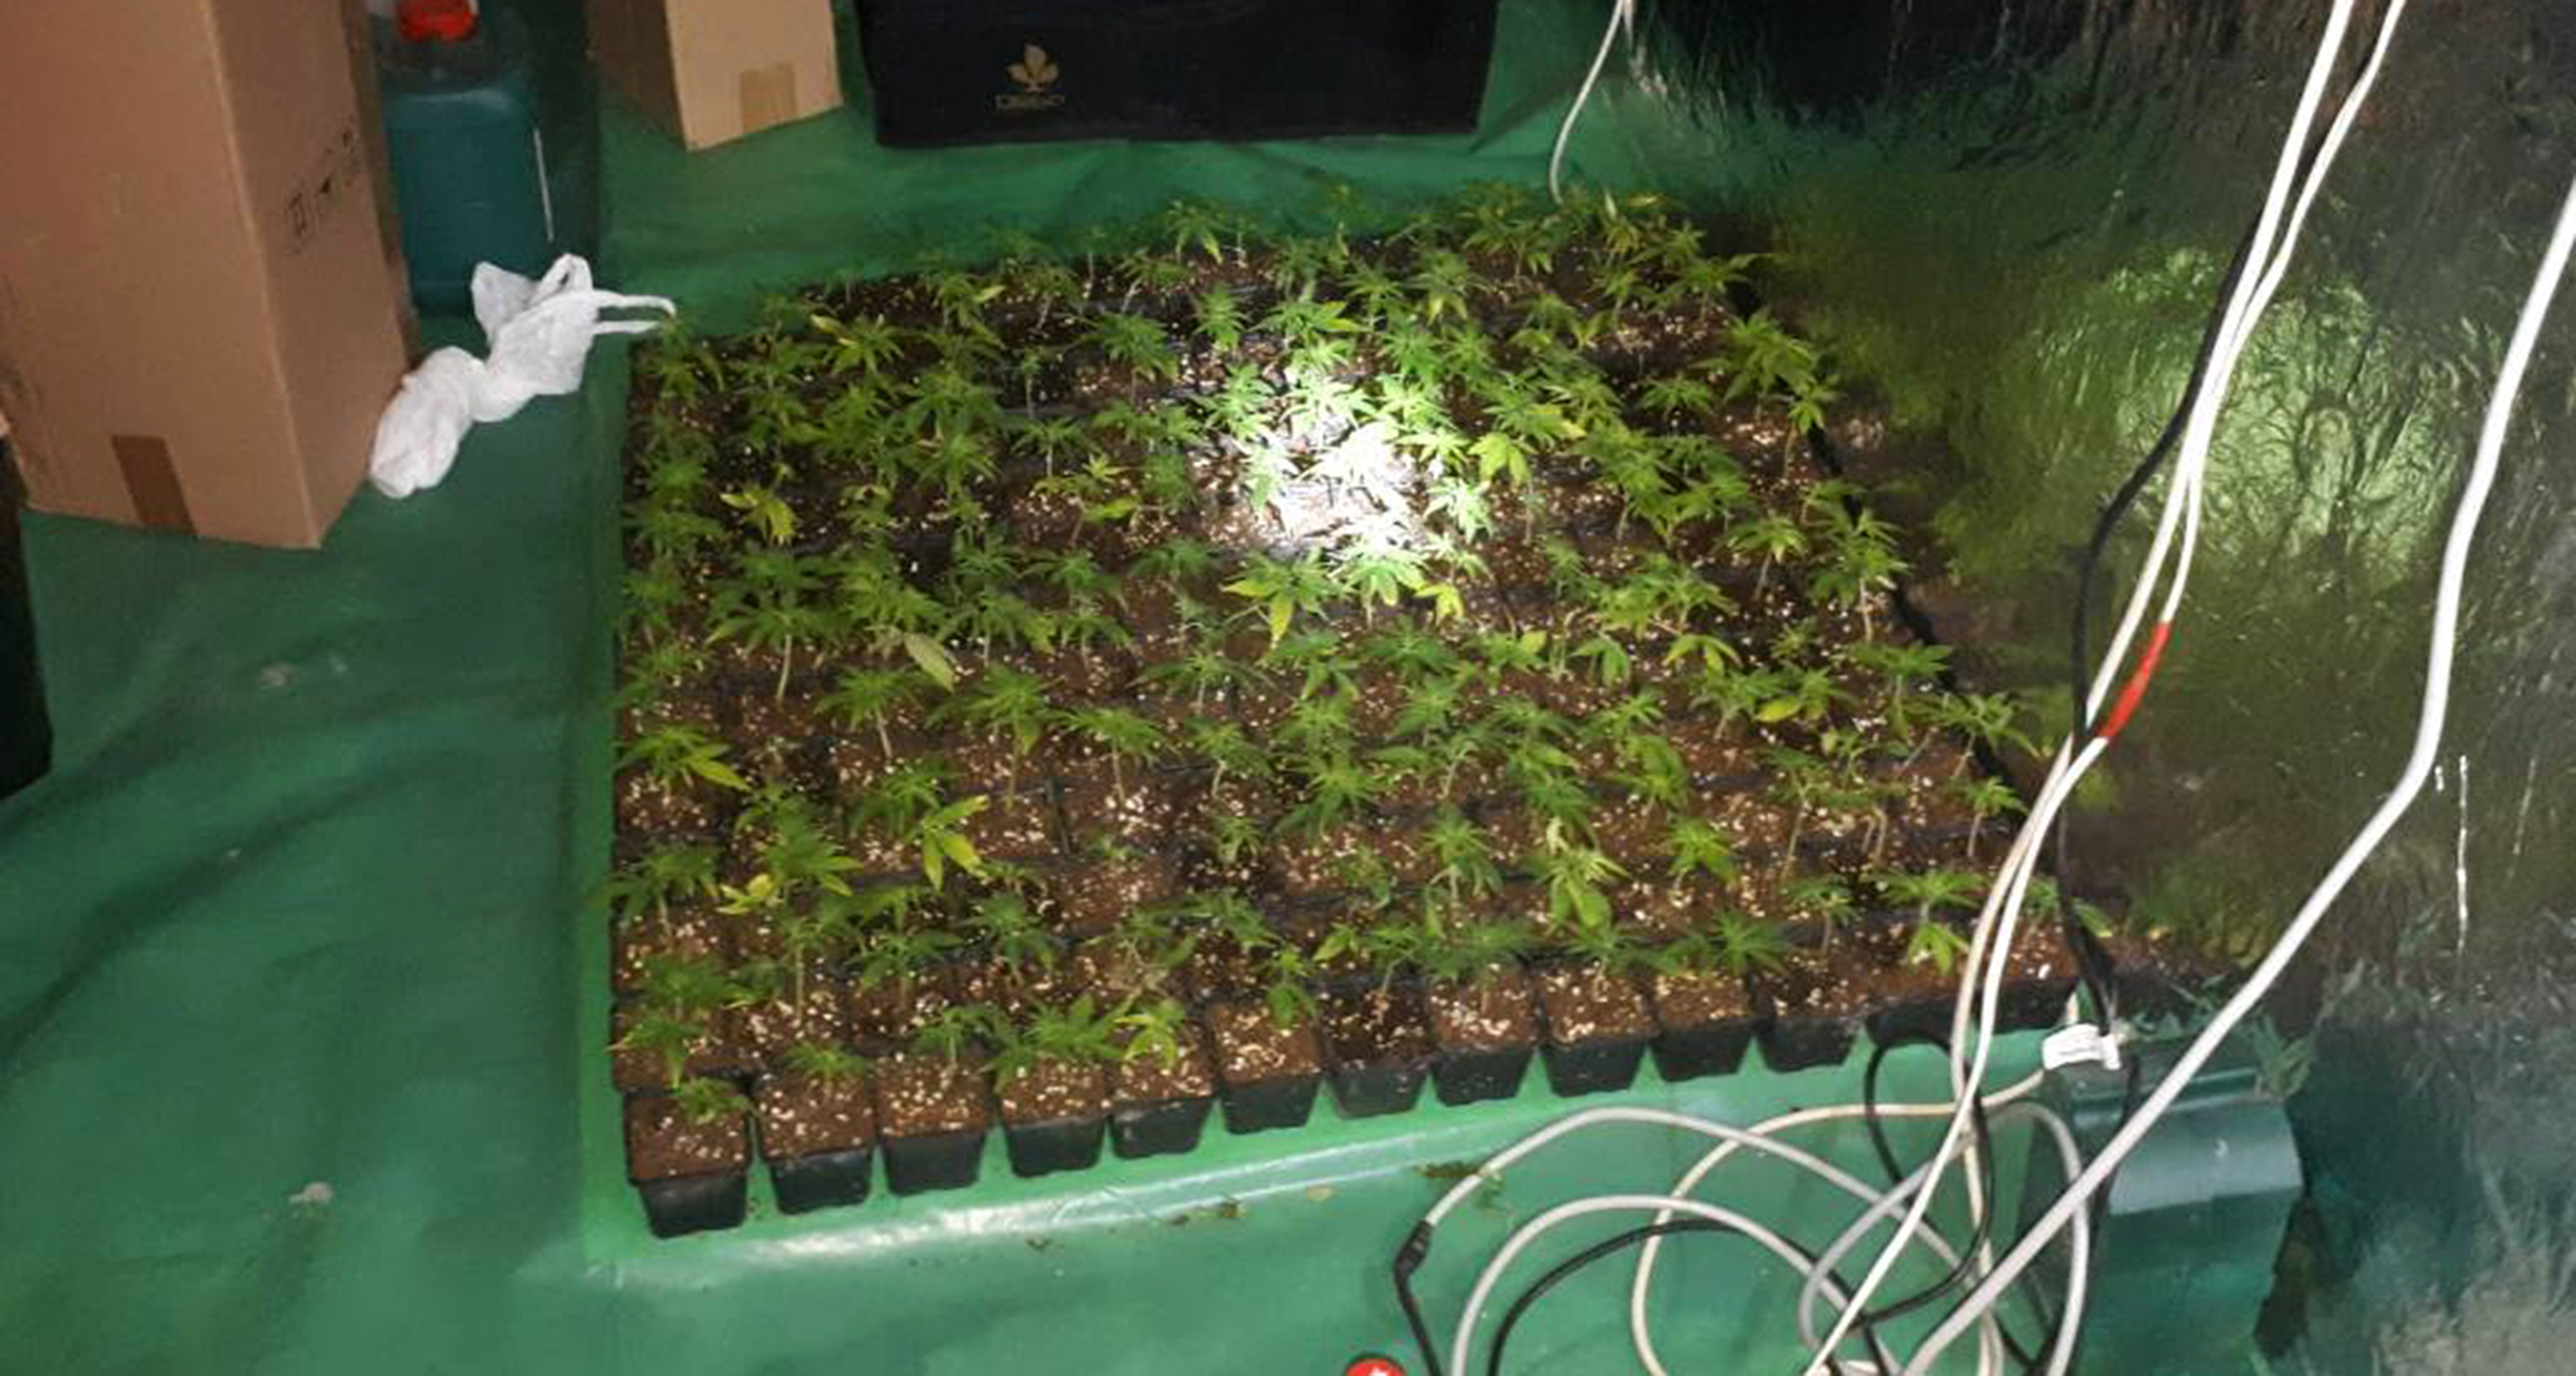 Policija zaplenila 16,5 kilograma marihuane i u okolini Obrenovca otkrila laboratoriju 